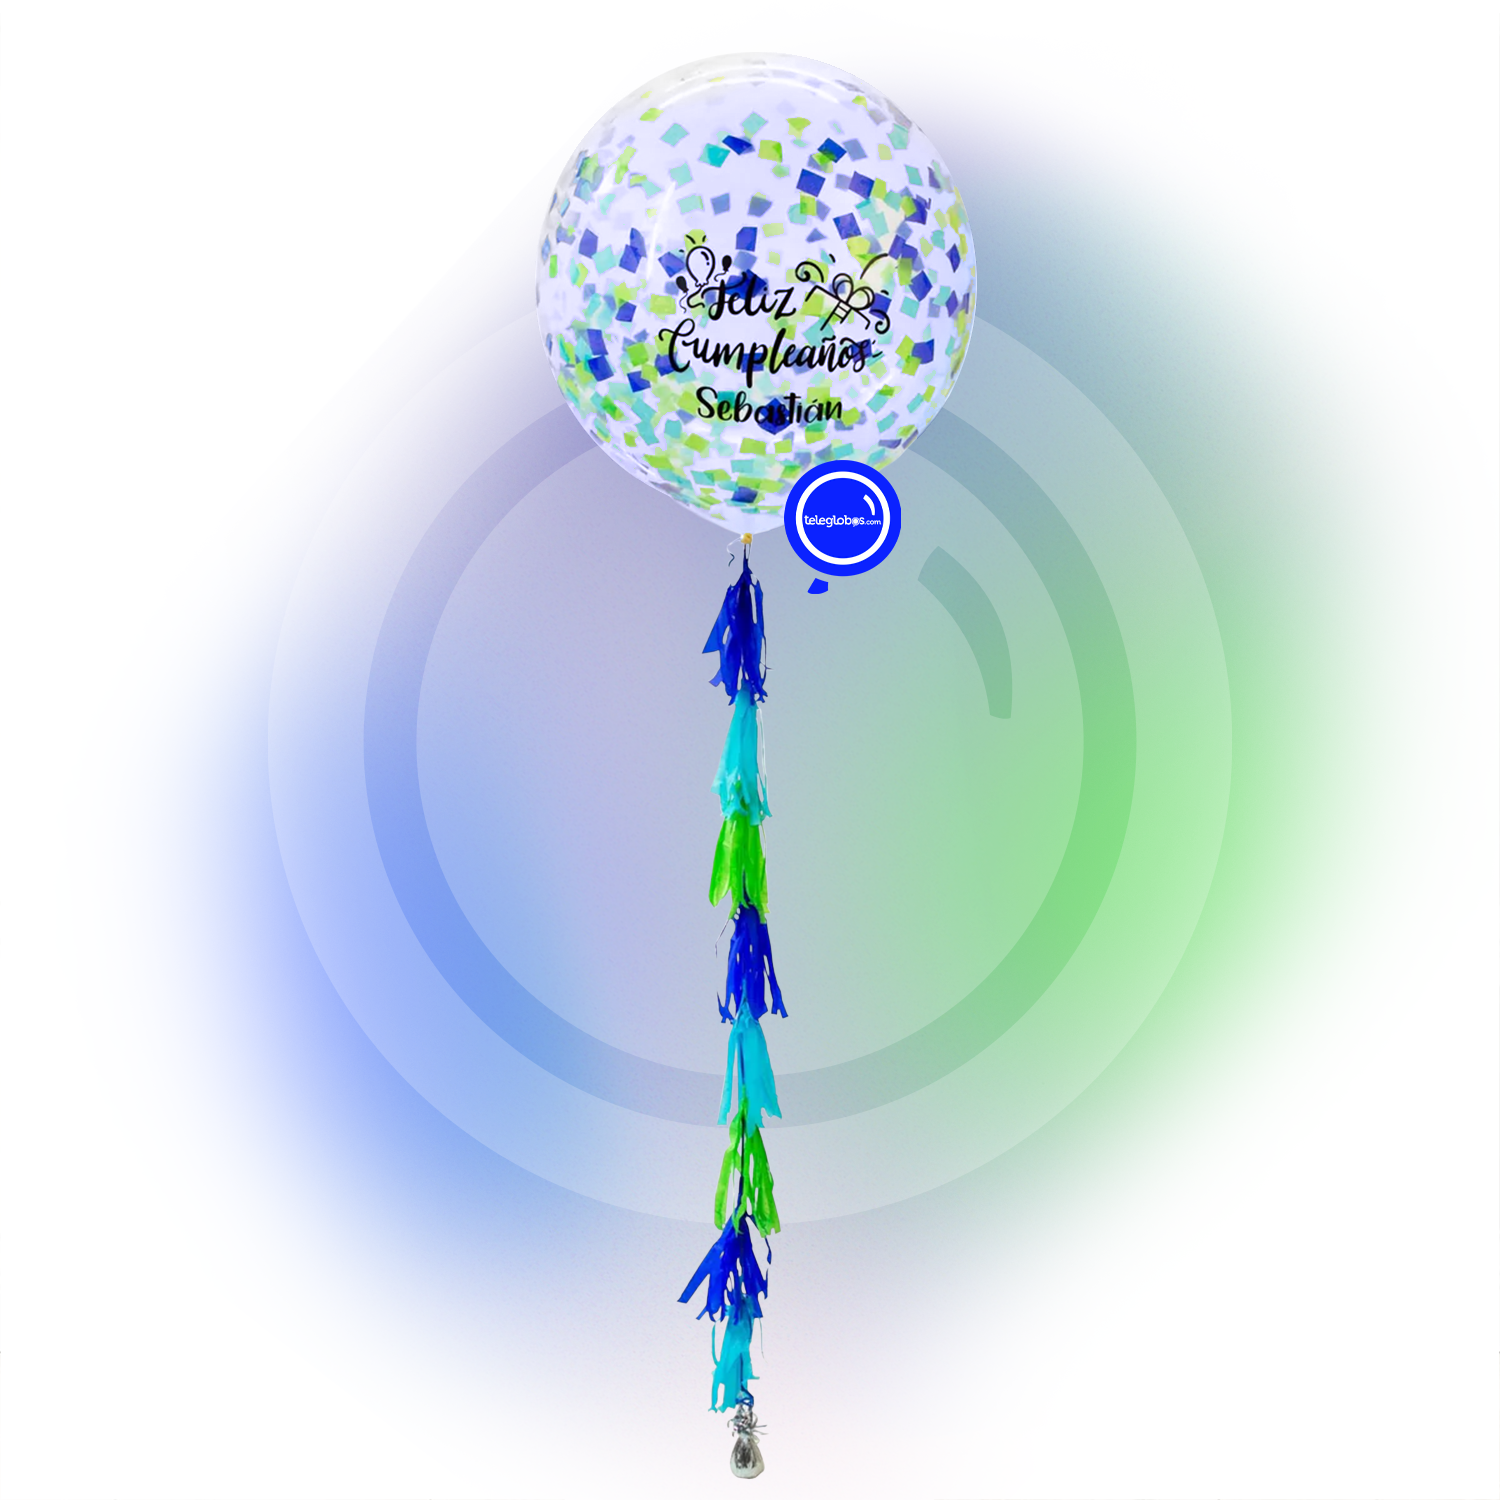 Globo grande/gigante personalizado con confetti -con helio- Azul/Verde Eco* | Globos y Regalos Teleglobos.com.mx.